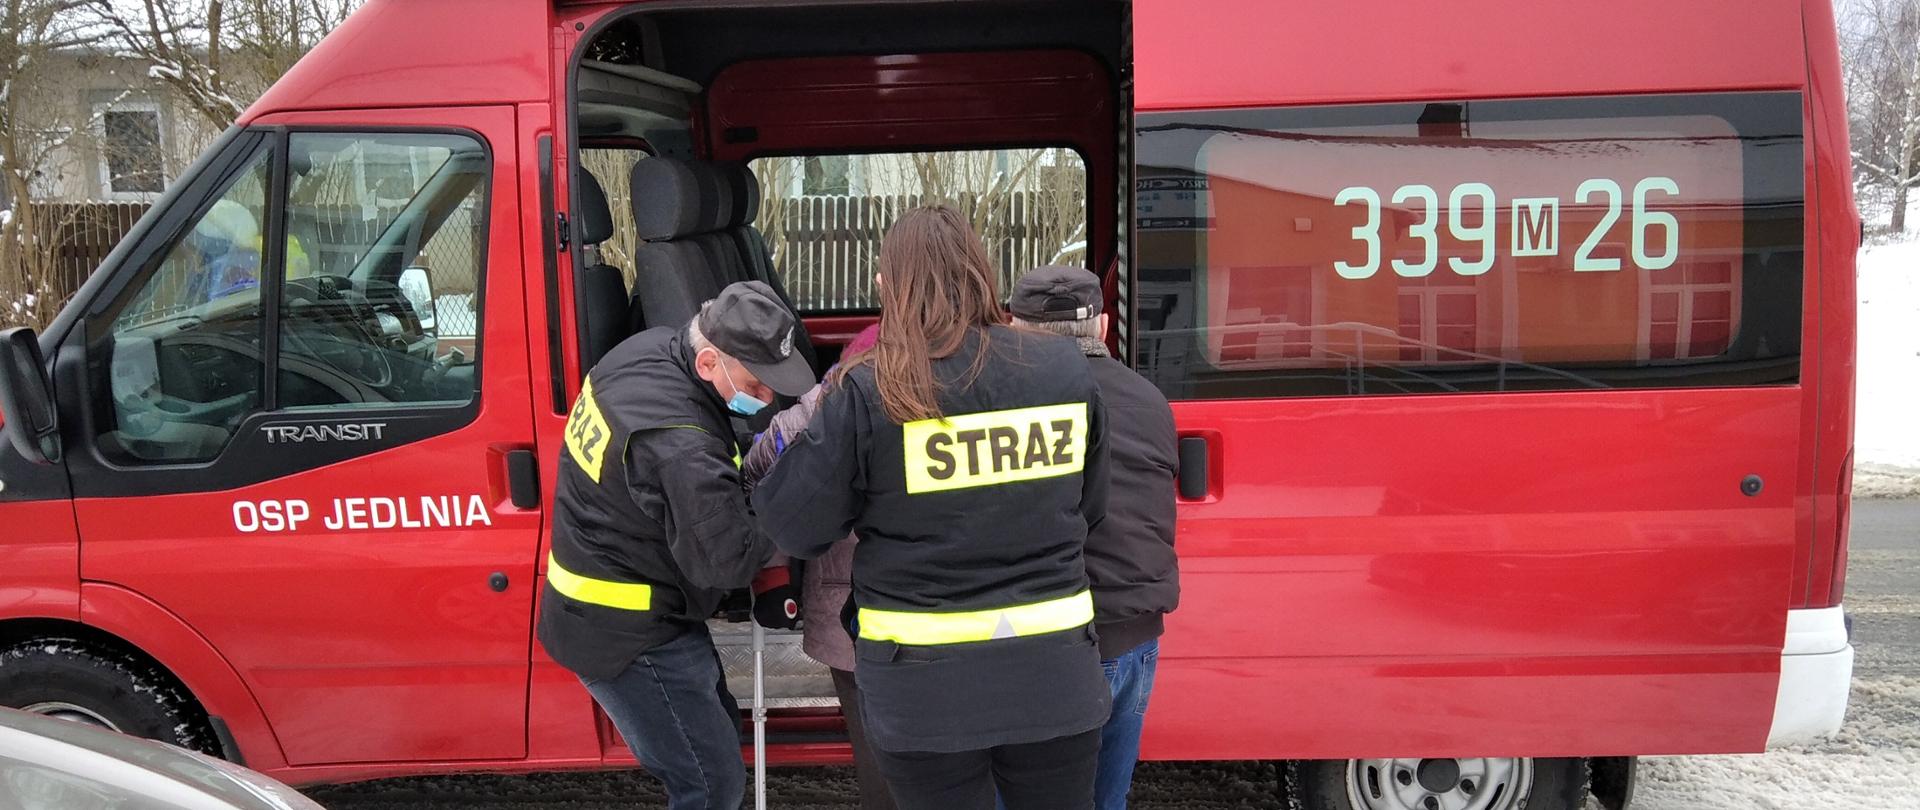 Na zdjęciu widoczni są strażacy z OSP Jedlnia, którzy pomagają wsiąść do samochodu pożarniczego typu "bus" osobie starszej